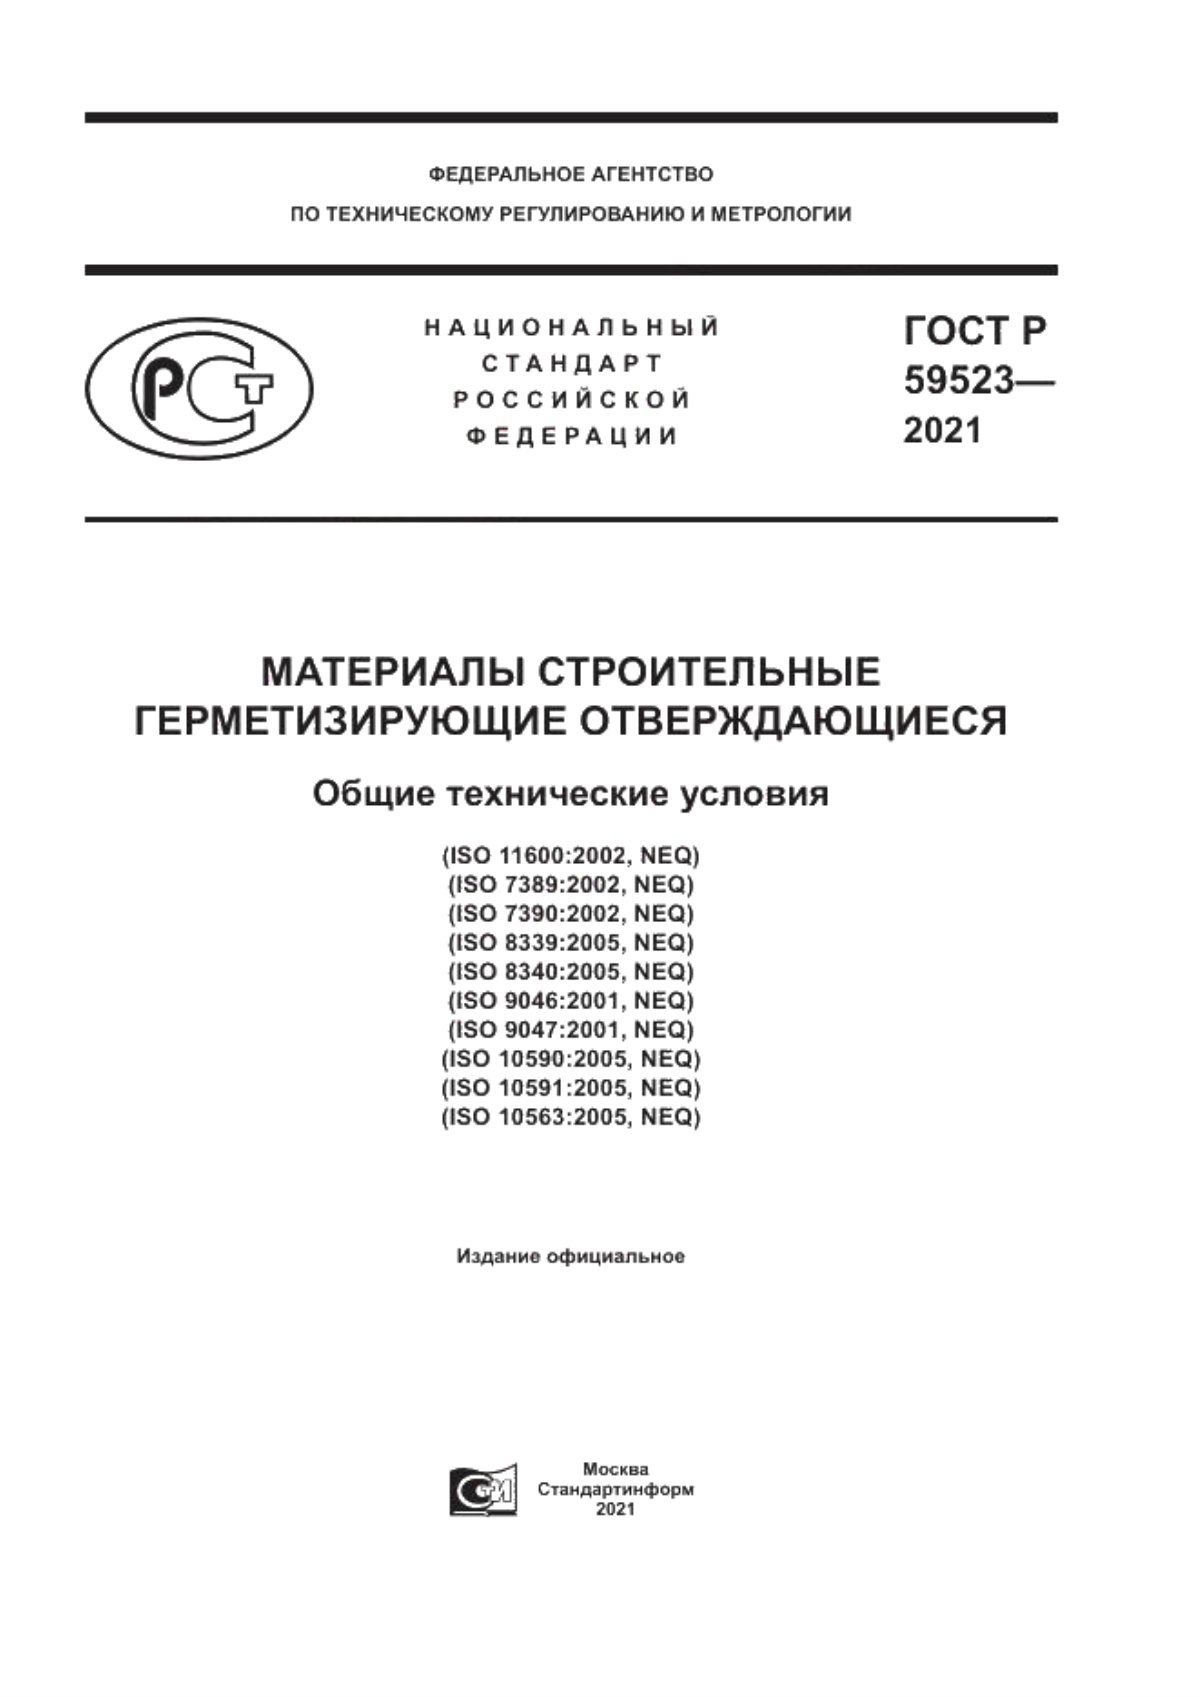 ГОСТ Р 59523-2021 Материалы строительные герметизирующие отверждающиеся. Общие технические условия